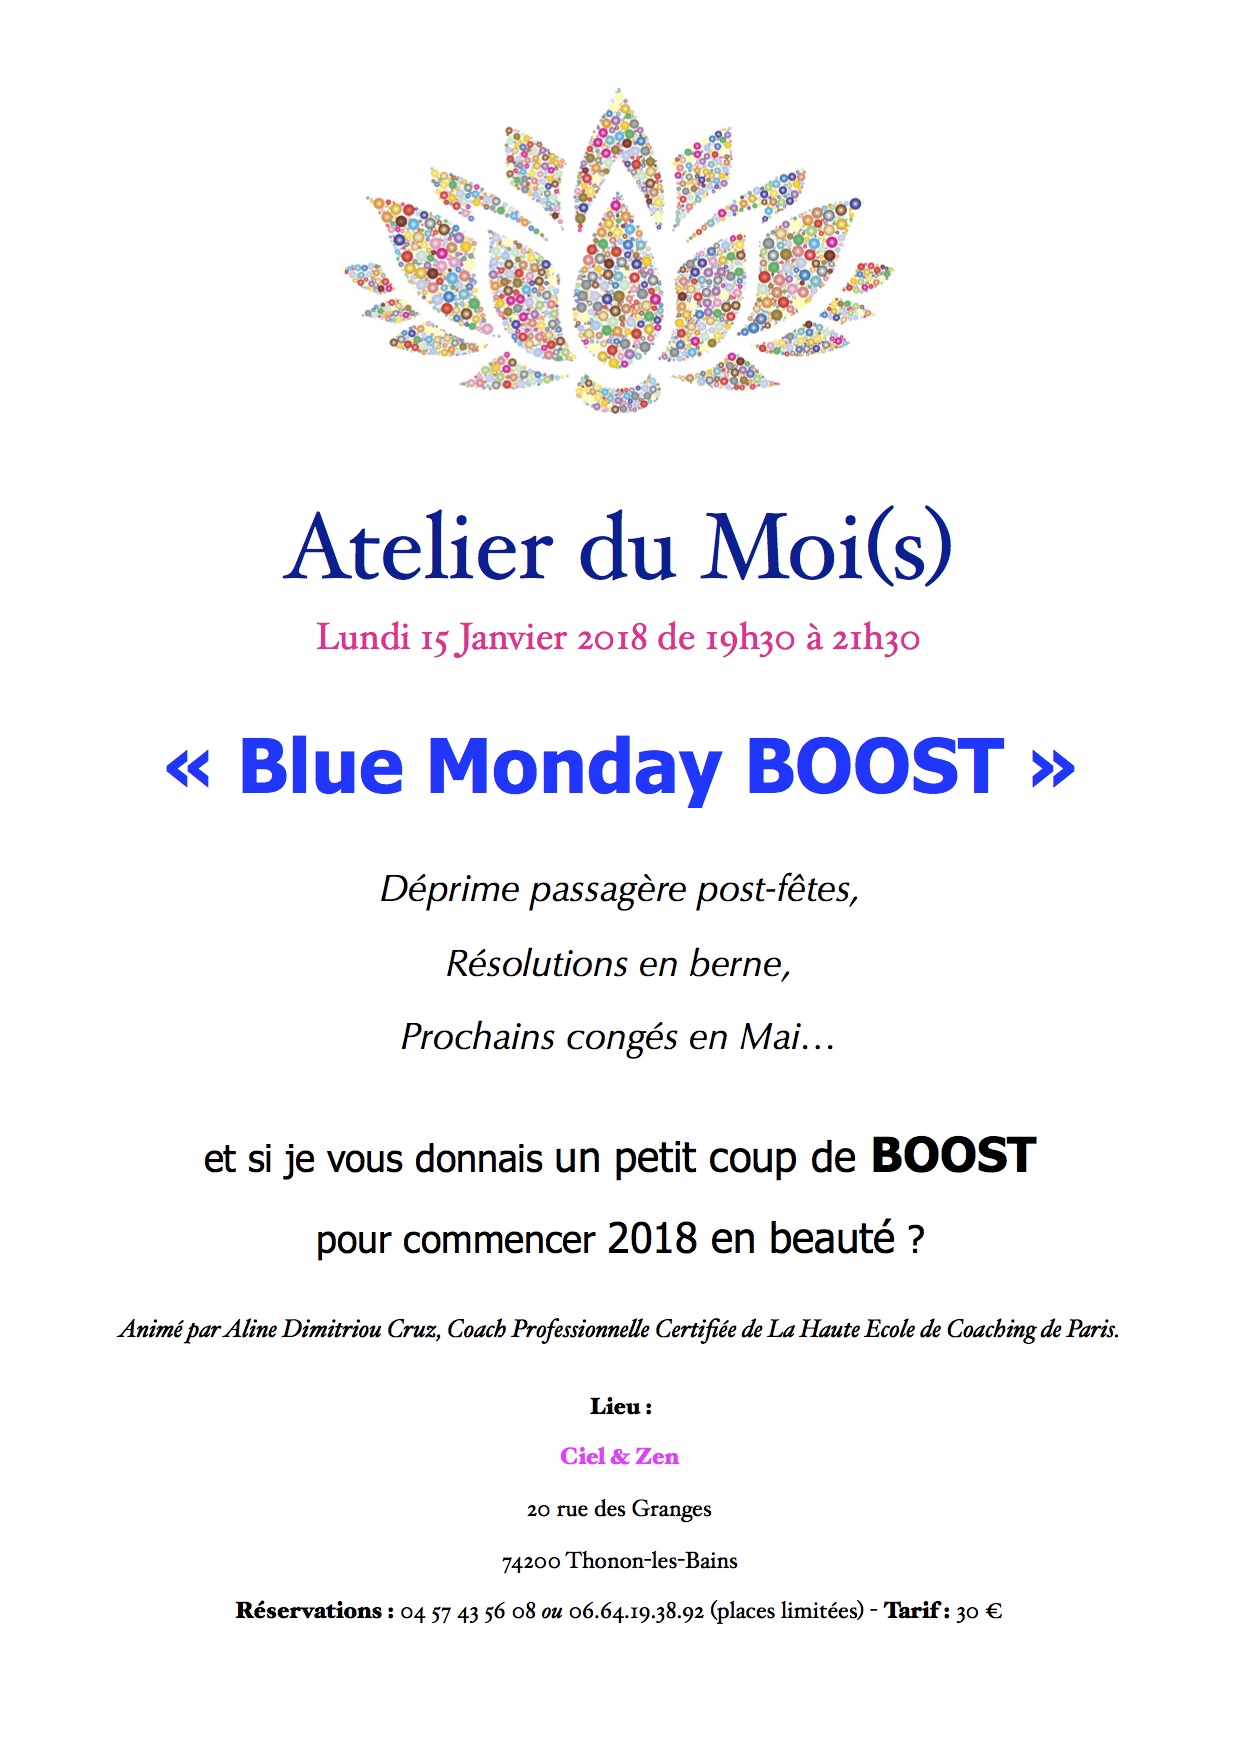 Atelier du Mois Blue Monday 15 Janvier